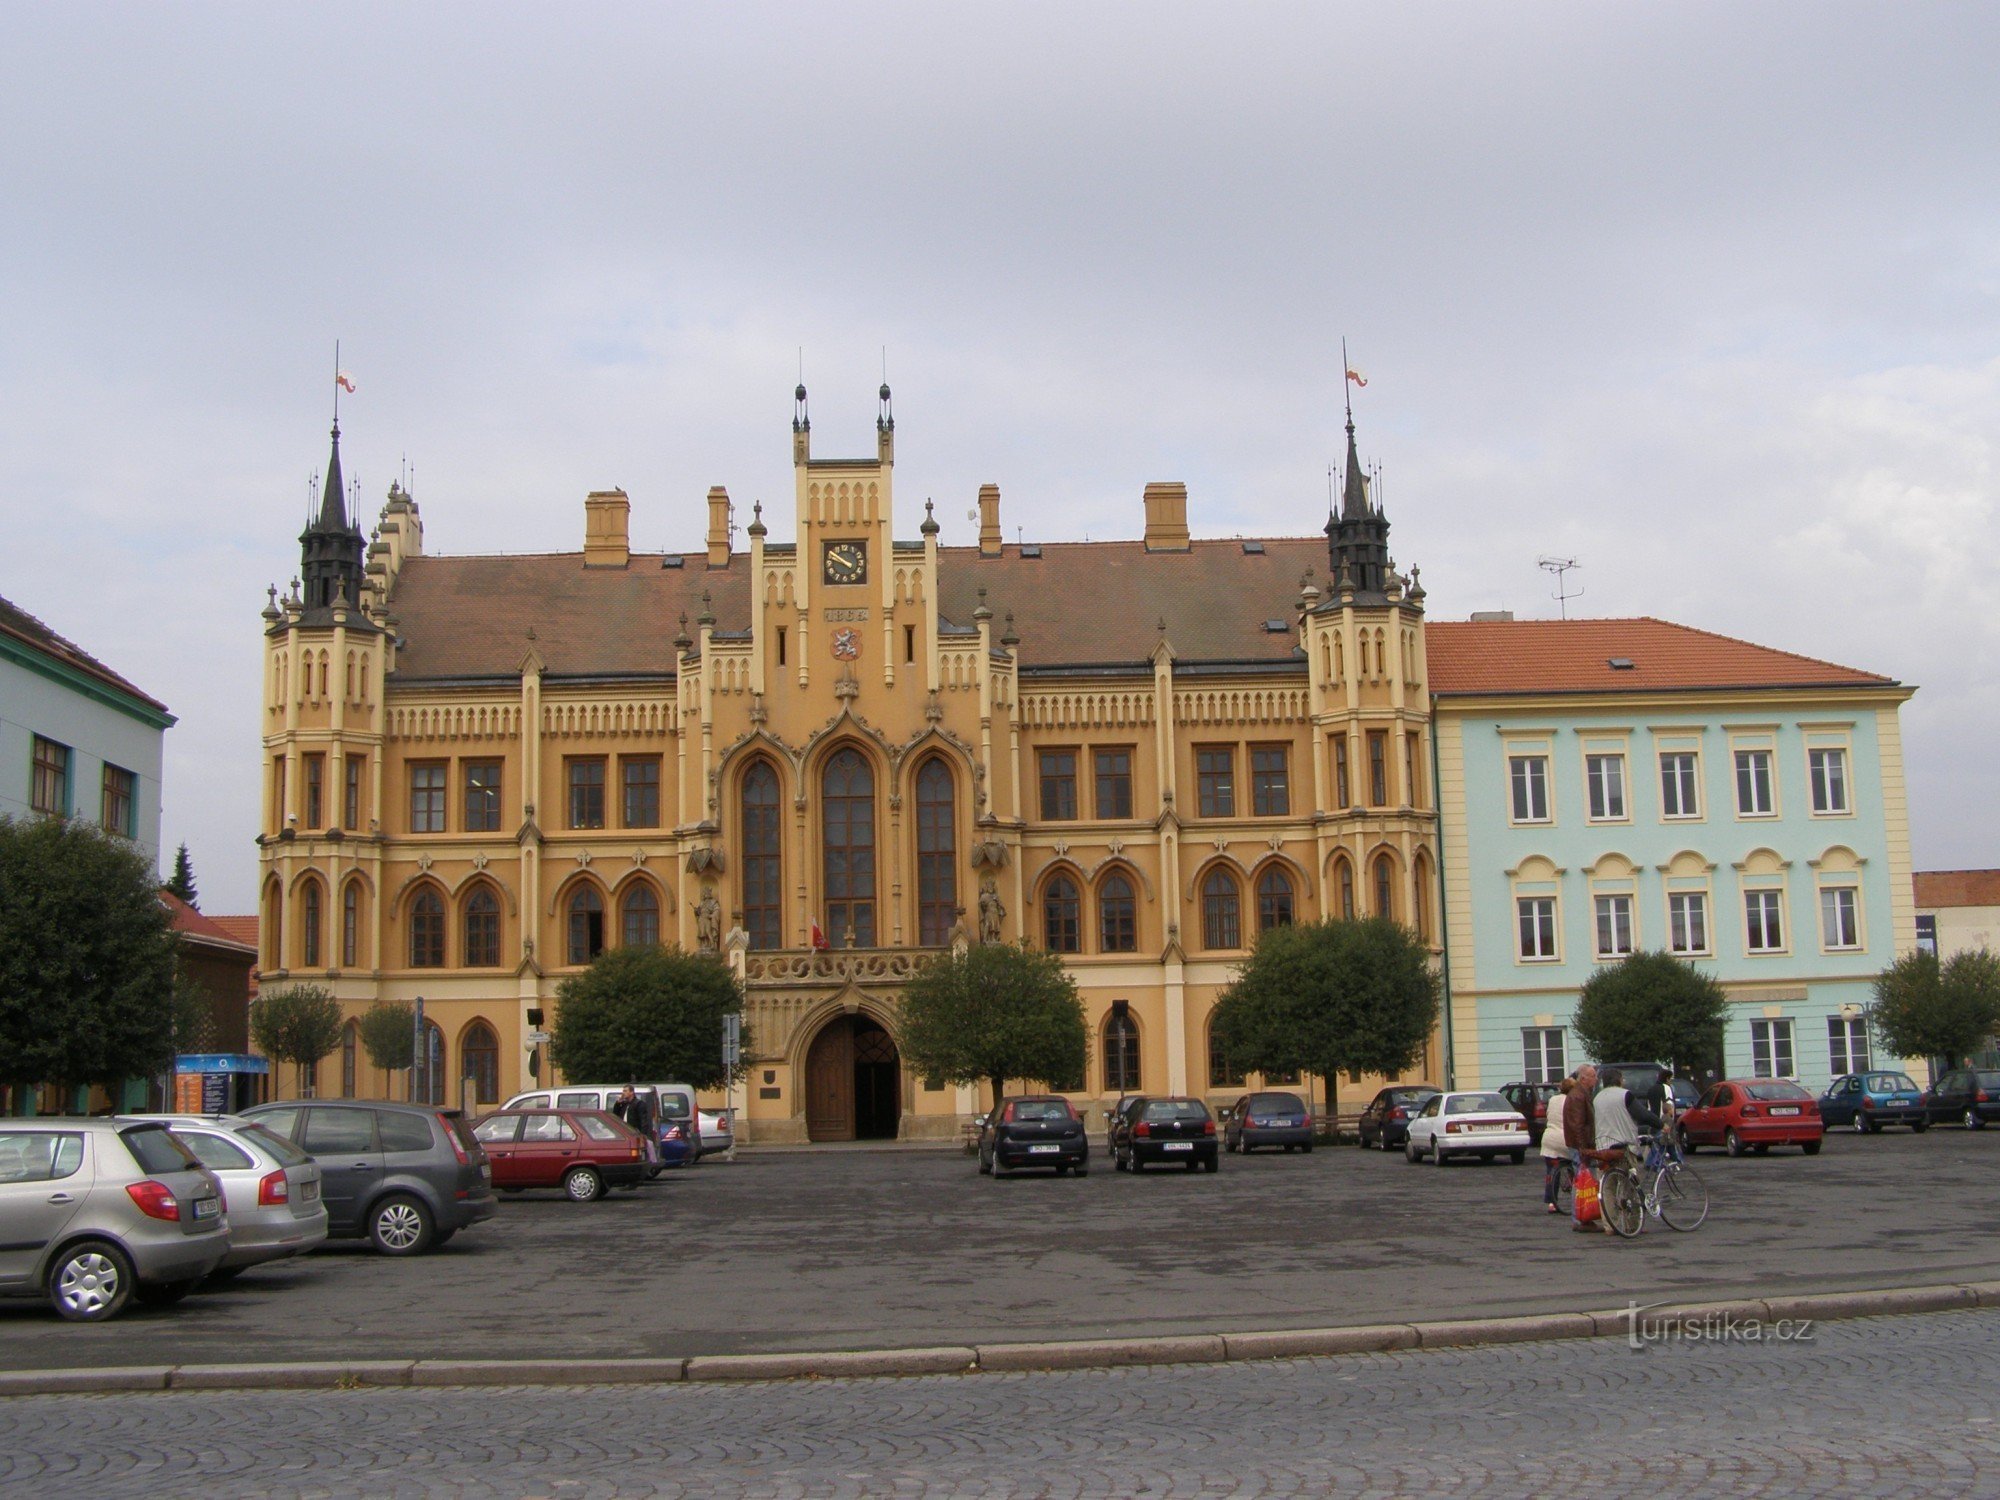 Nový Bydžov - radnice